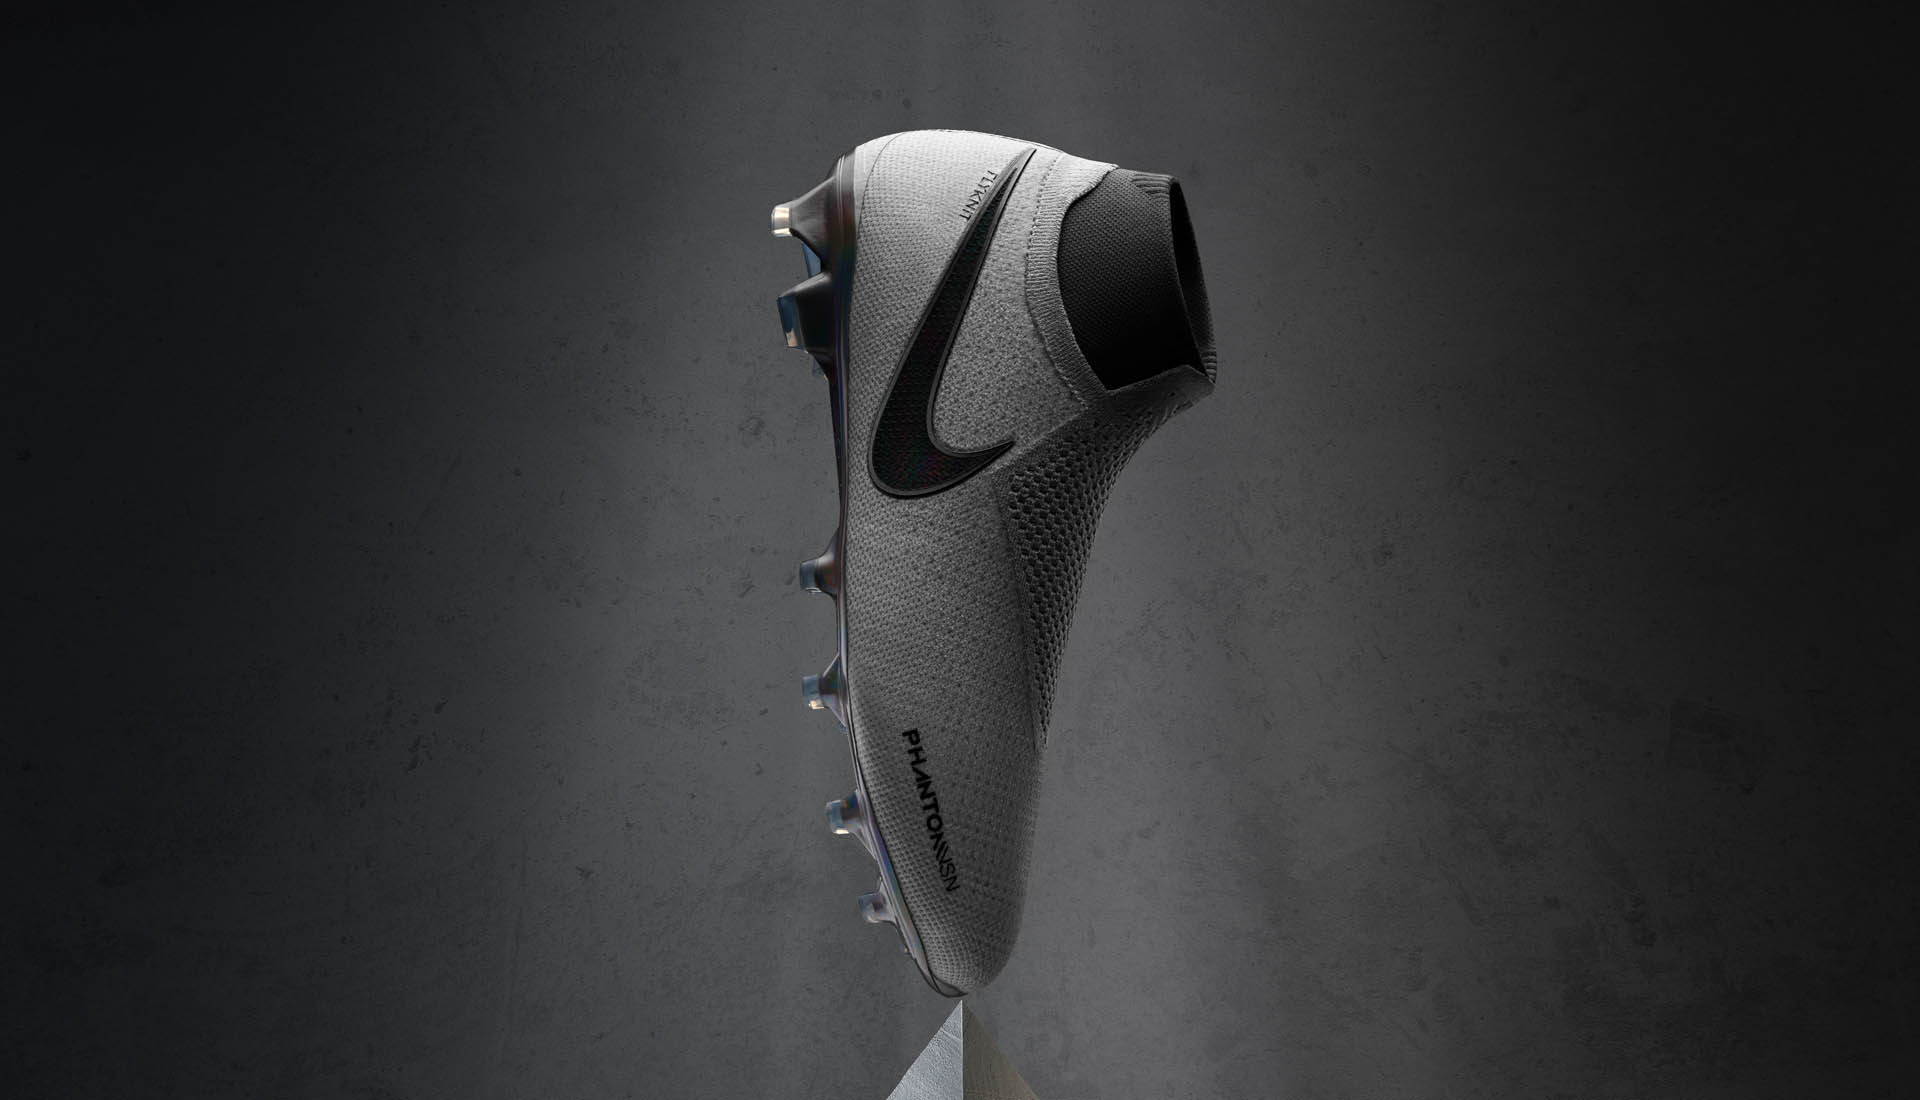 Giày Nike Phantom VSN là đôi giày đầu tiên được áp dụng công nghệ Quadfit tuyệt vời